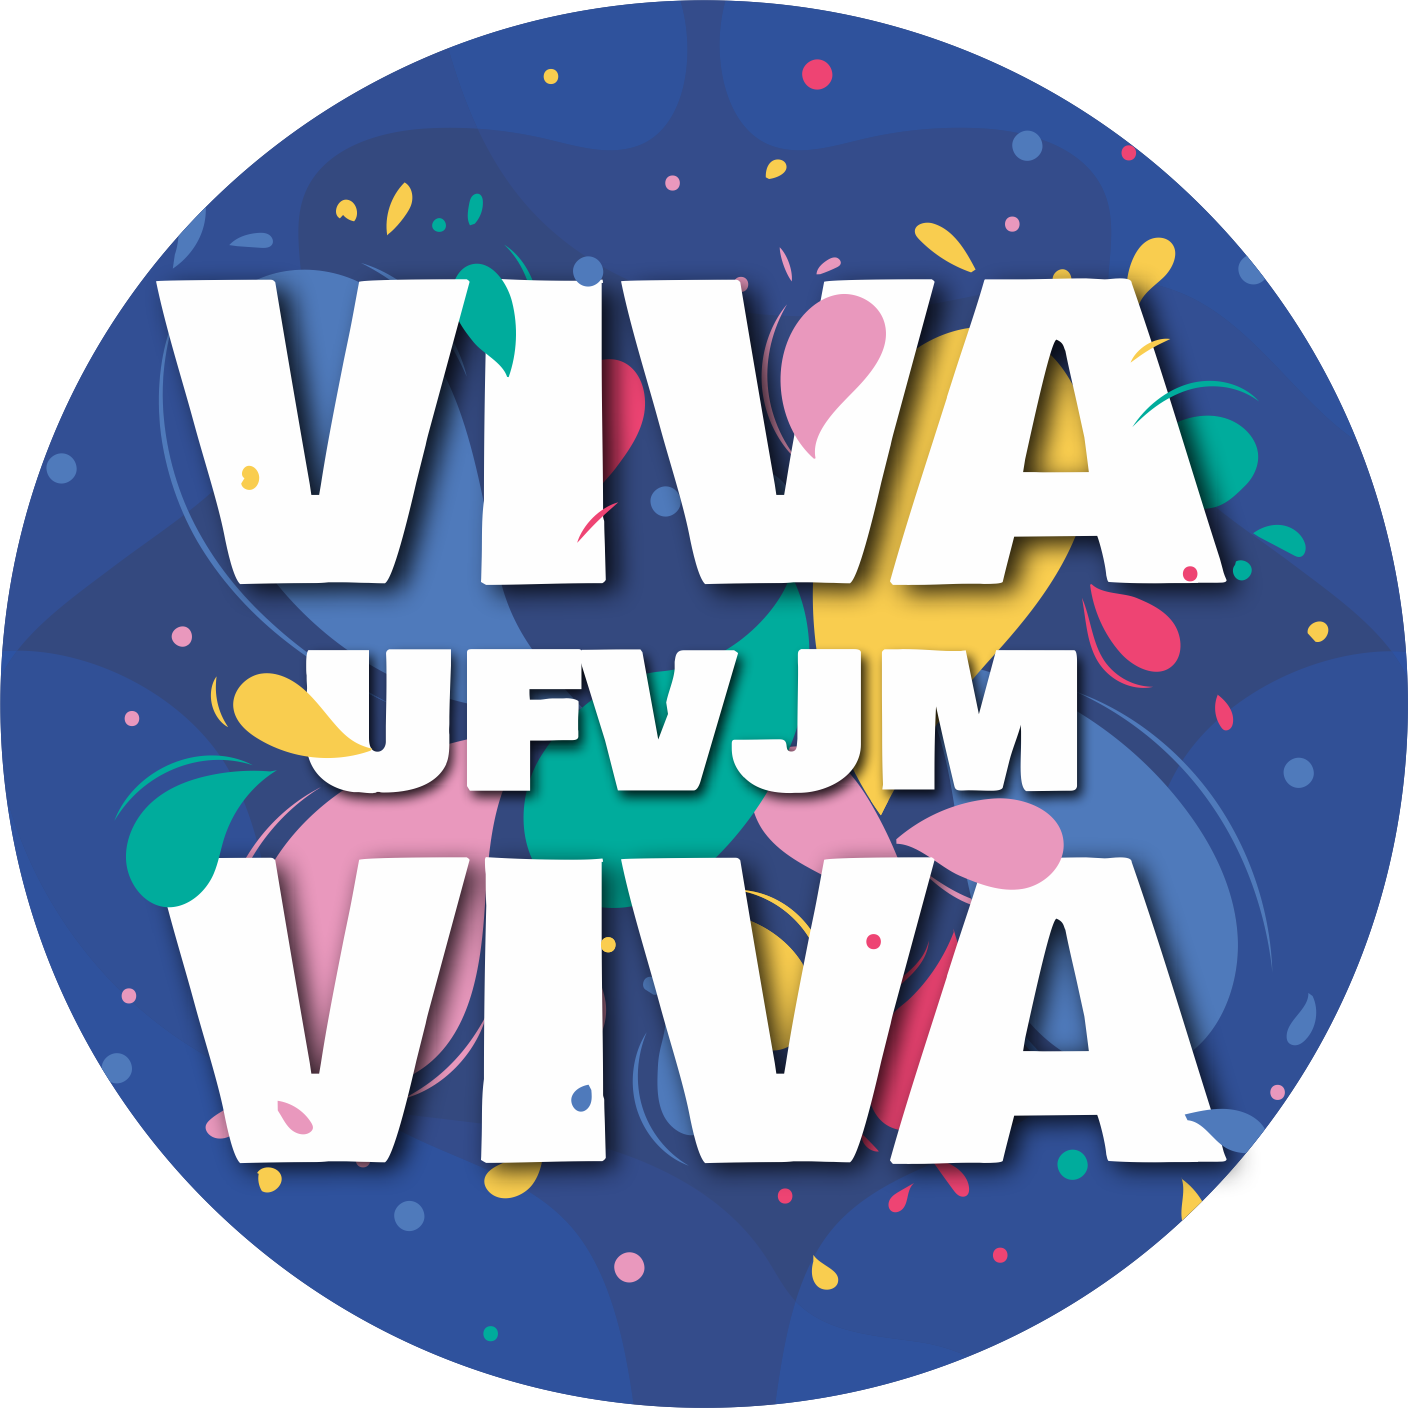 Peça gráfica do evento VIVA UFVJM VIVA - Peça 2